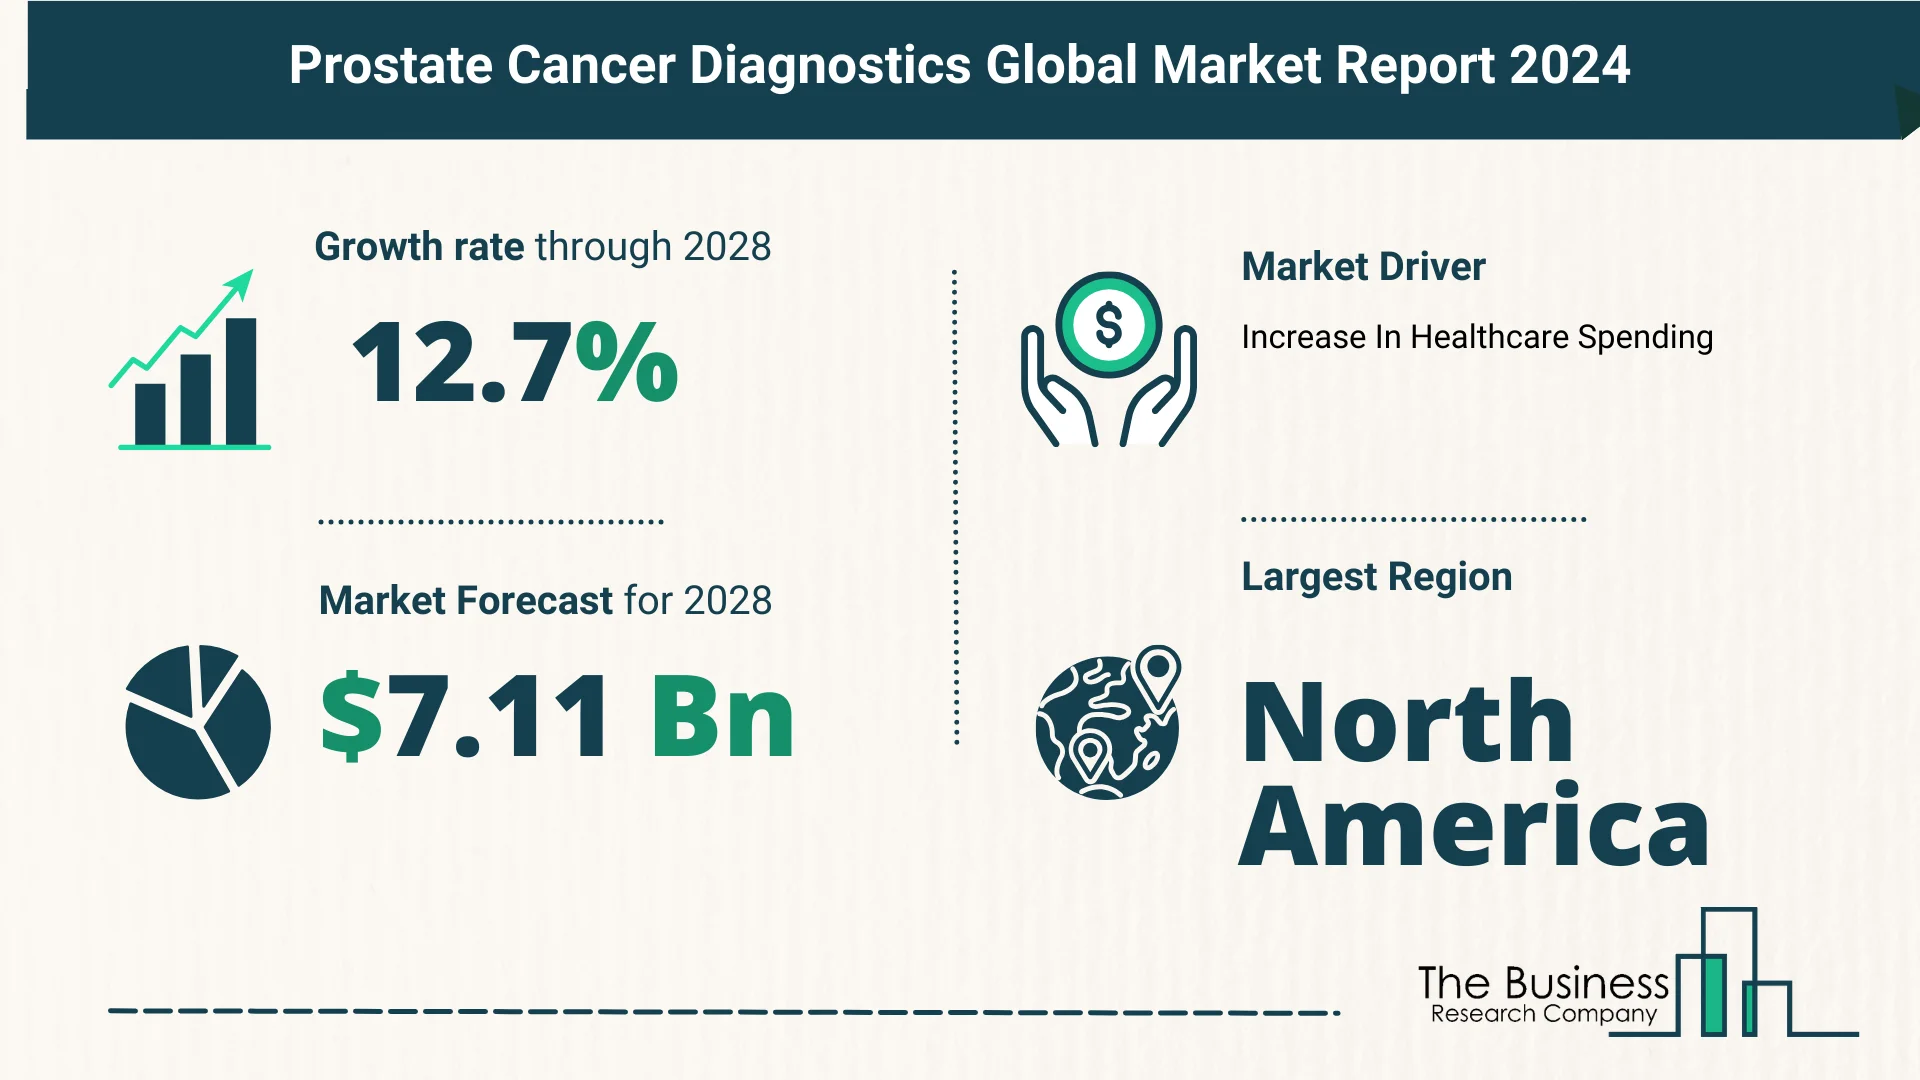 Global Prostate Cancer Diagnostics Market Size